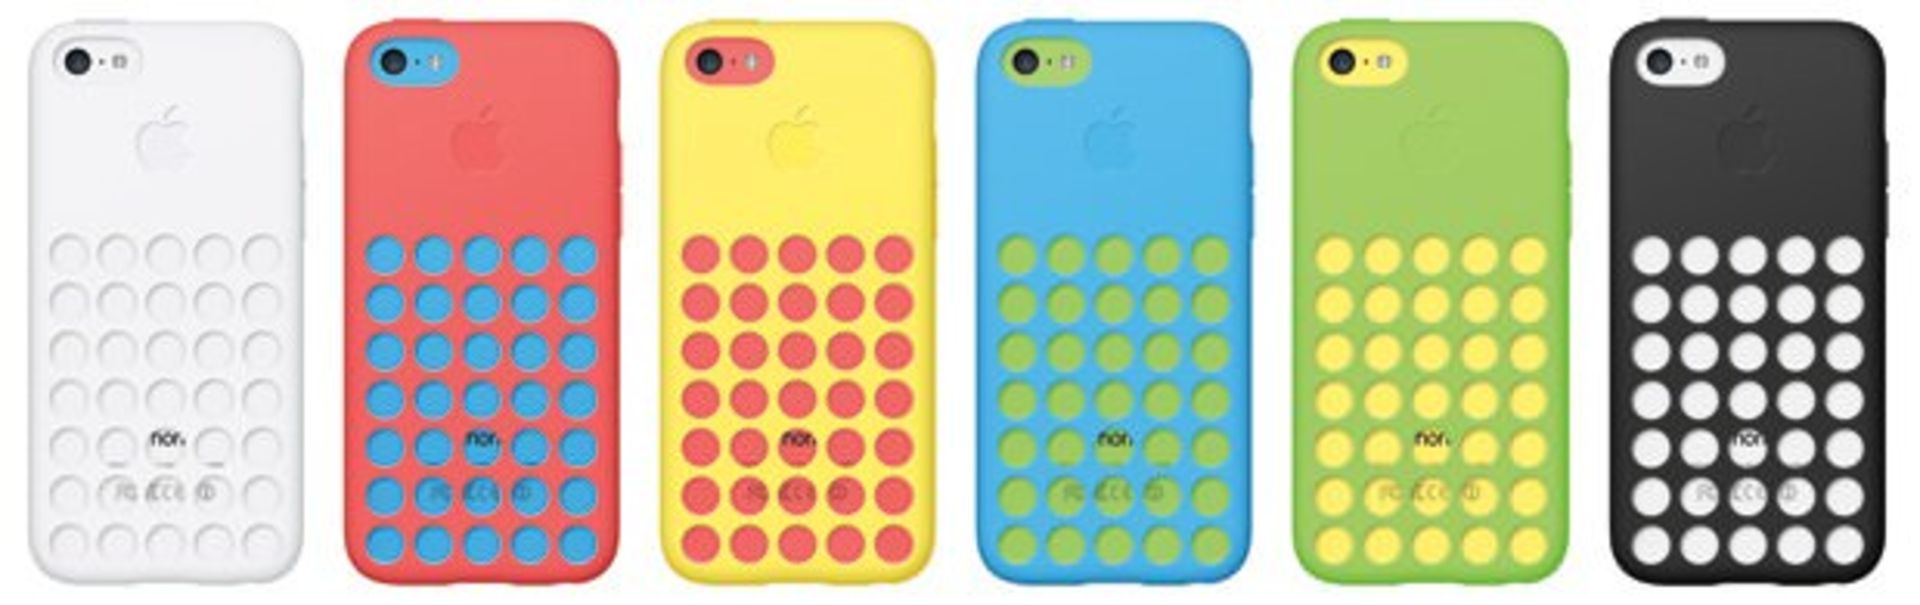 iphone5c-rear-cases